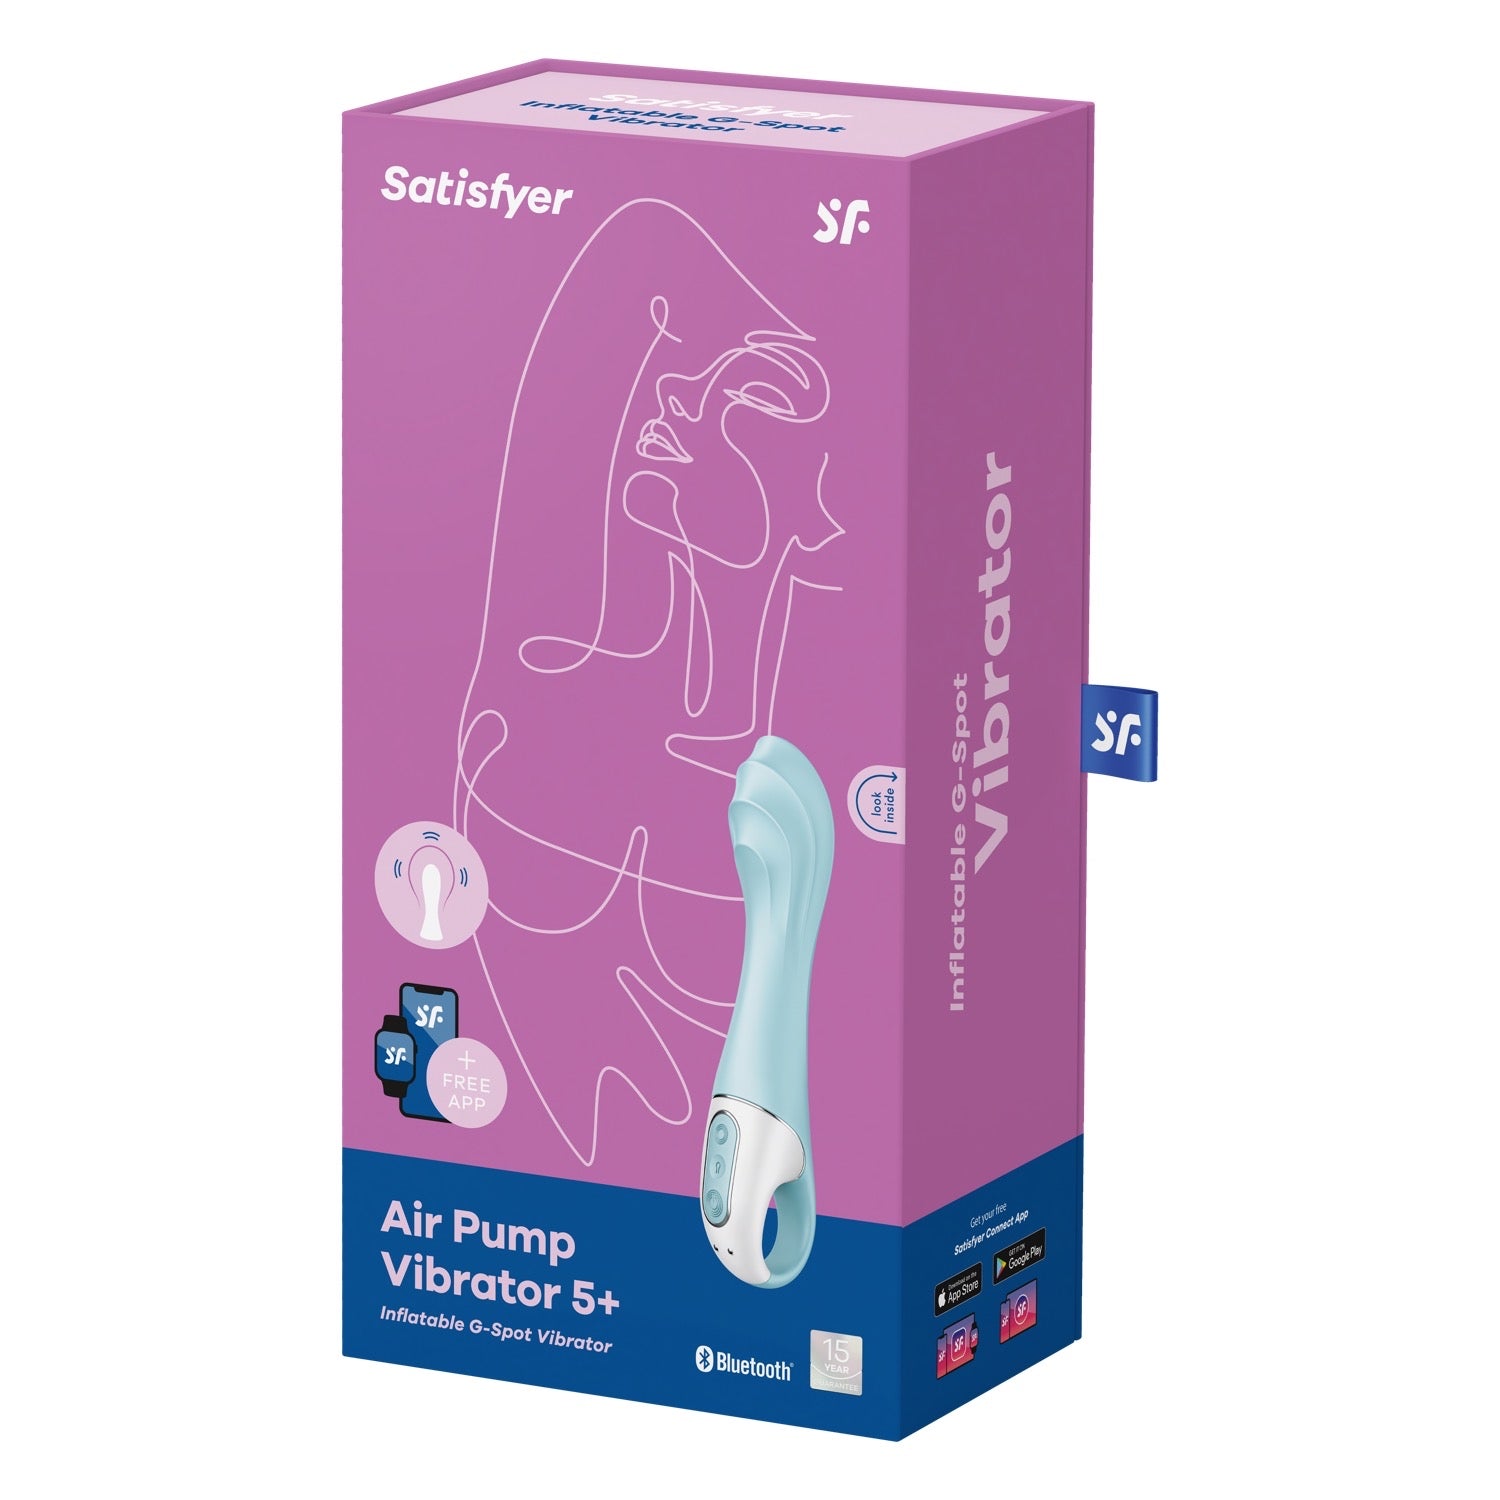 Satisfyer Air Pump Vibrator 5+ - Blue by Satisfyer